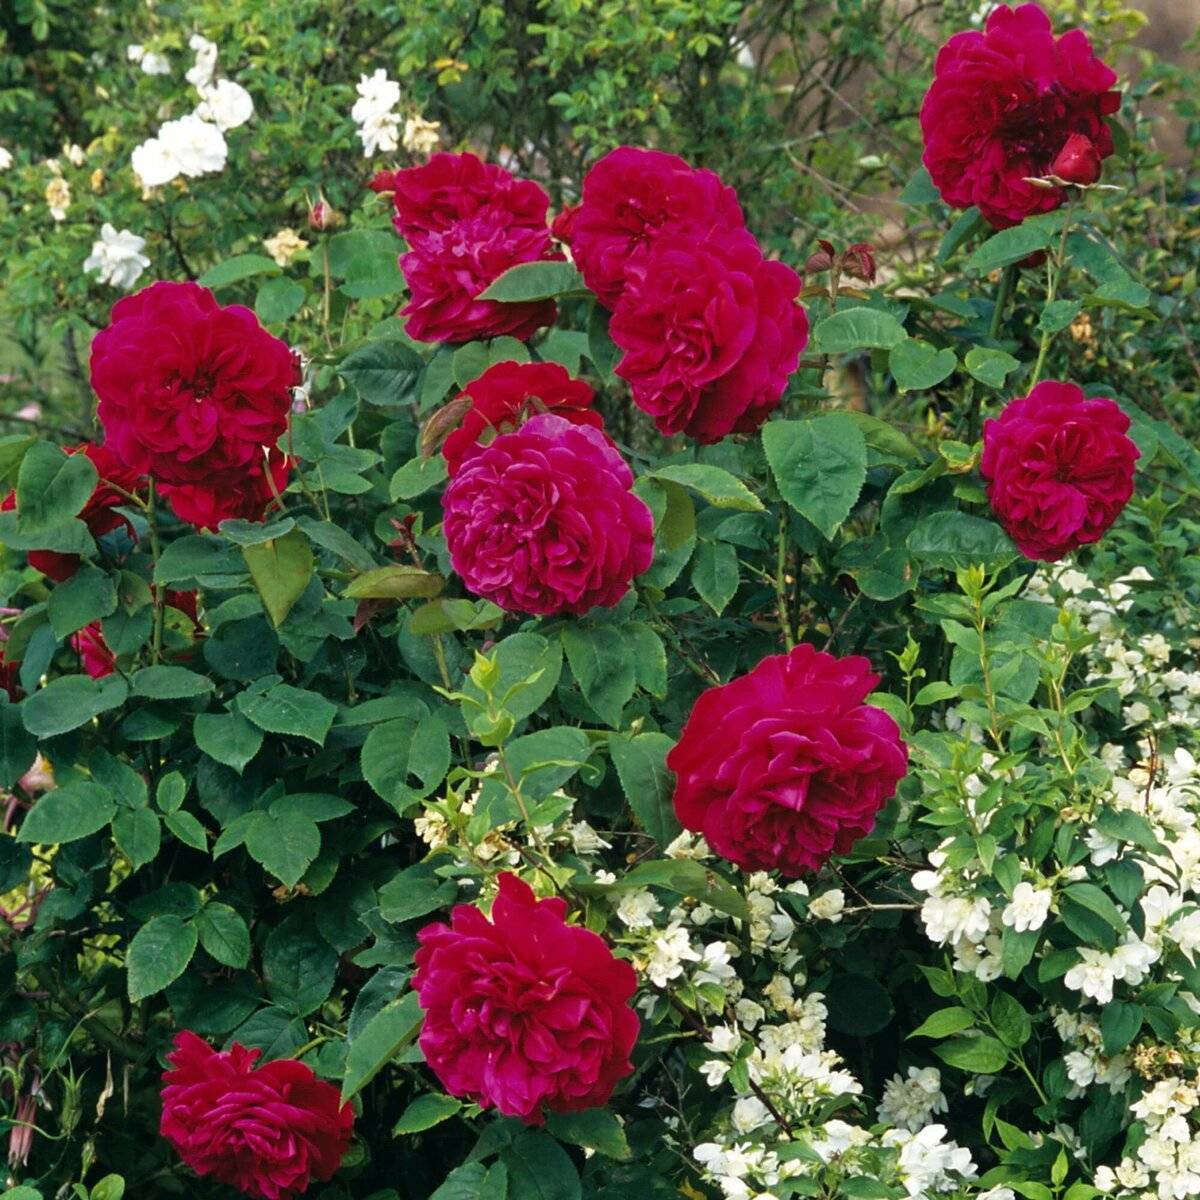 О розе эл ди брейтуэйт: описание и характеристика сорта розы лорд брейсвейт